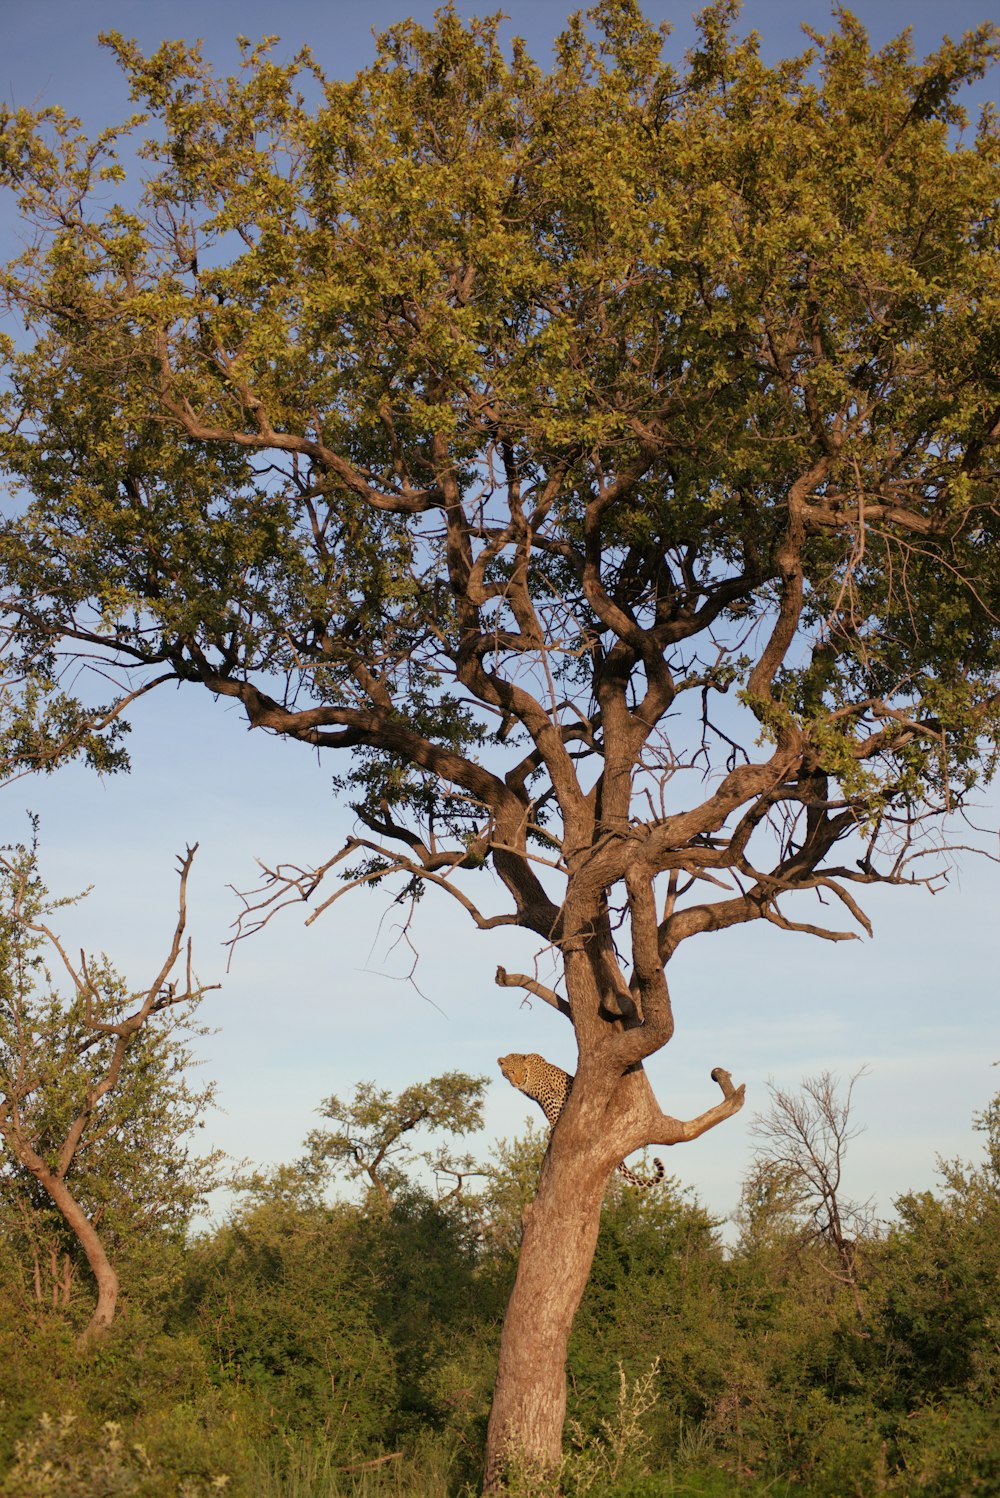 a giraffe standing next to a tall tree